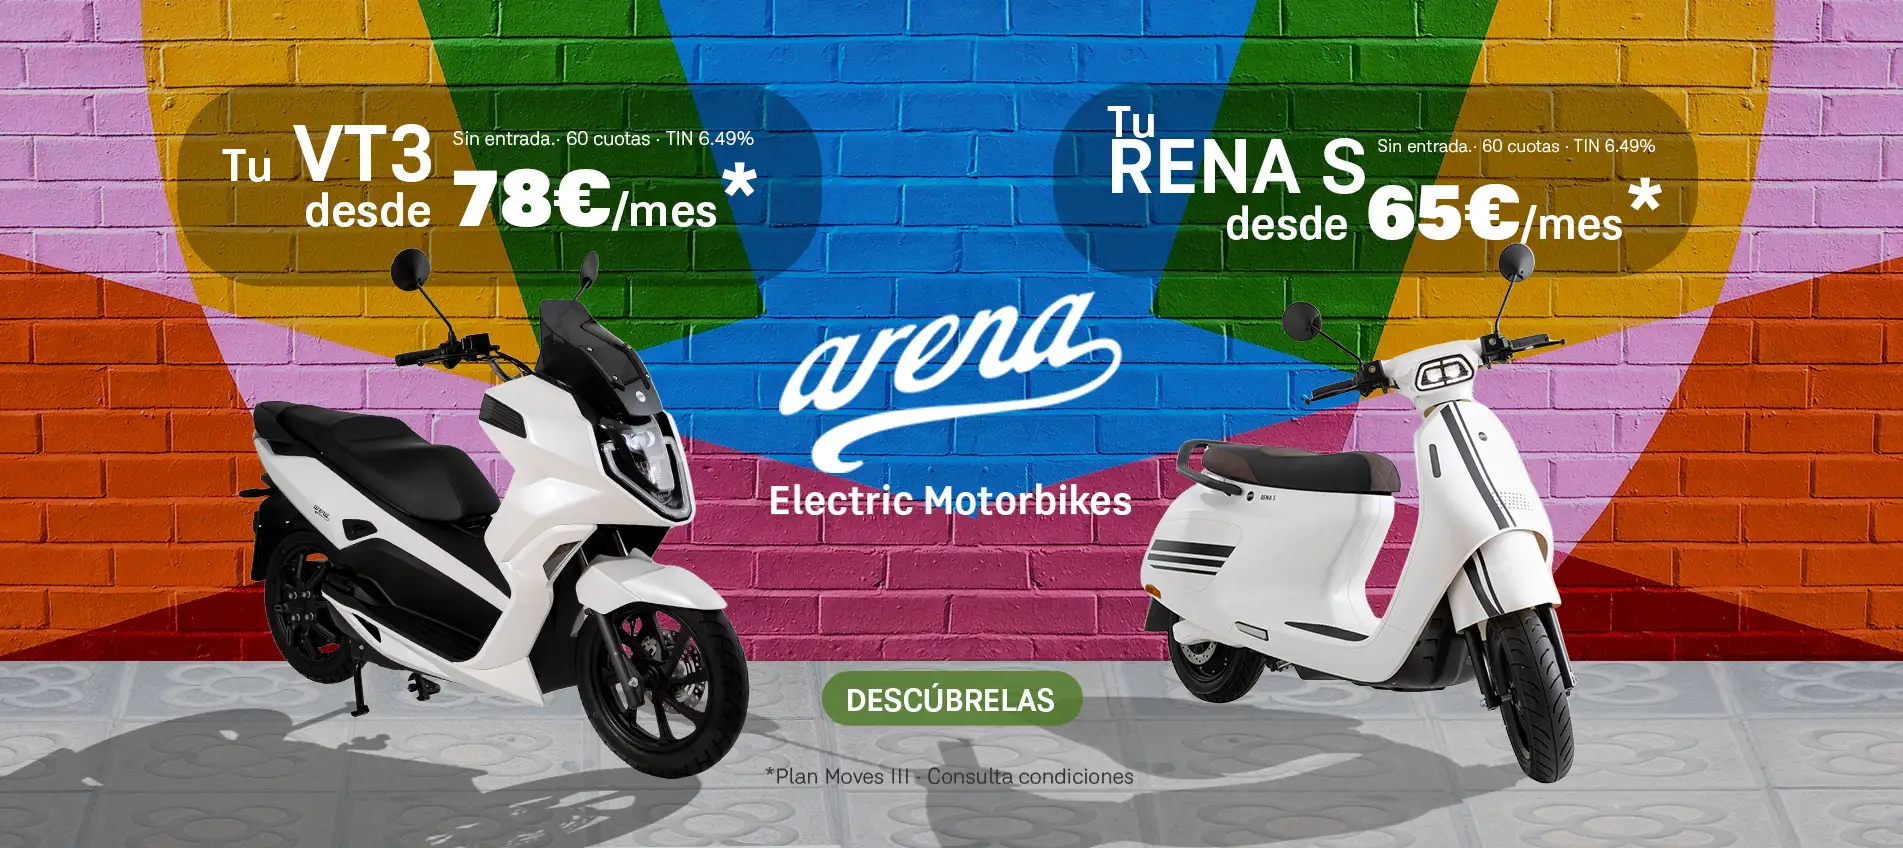 Arena Rena S - VT3 Oferta Cuota septiembre